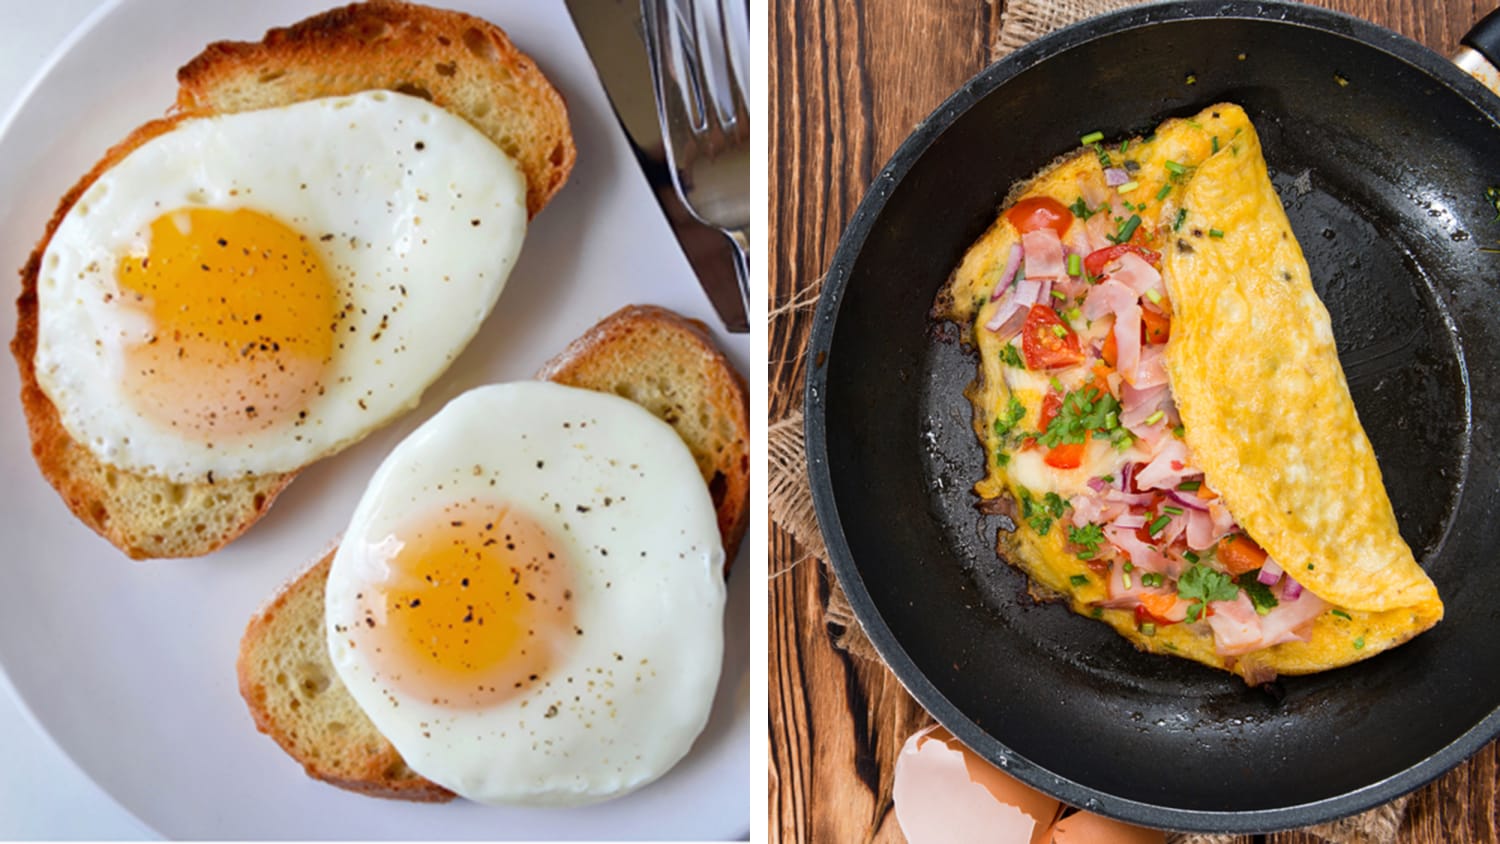 Яйца блины и лето. Красивая яичница. Яичный завтрак. Яичница для завтрака. Стейк с яичницей на завтрак.